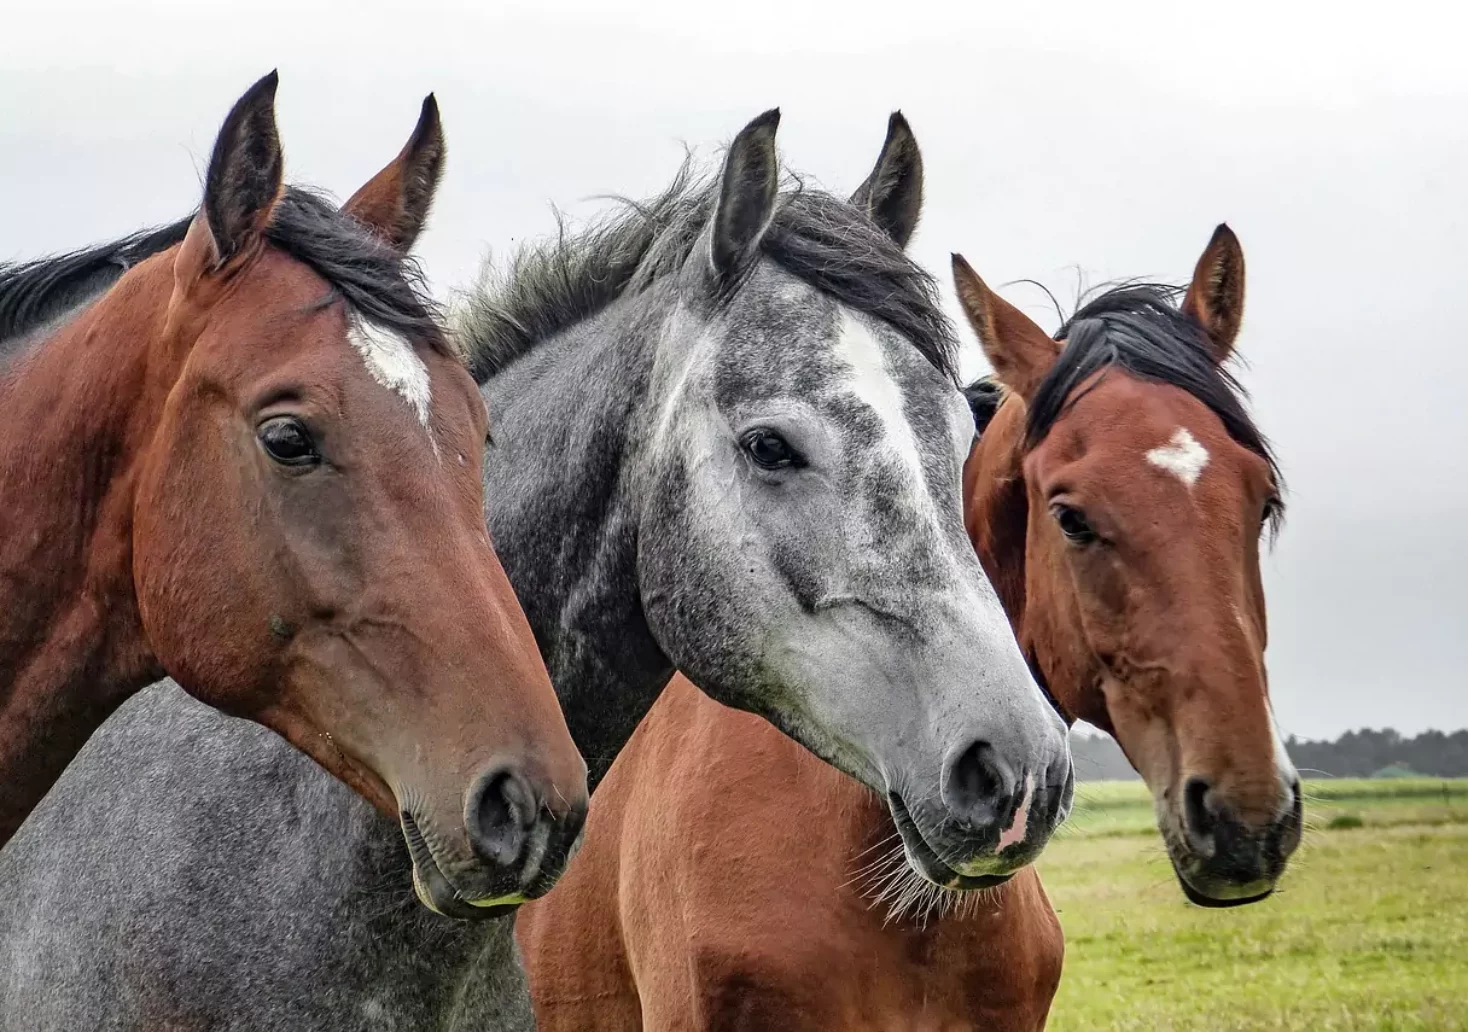 Foto in Beitrag von 5min.at: Zu sehen sind drei Pferde auf einer Wiese.